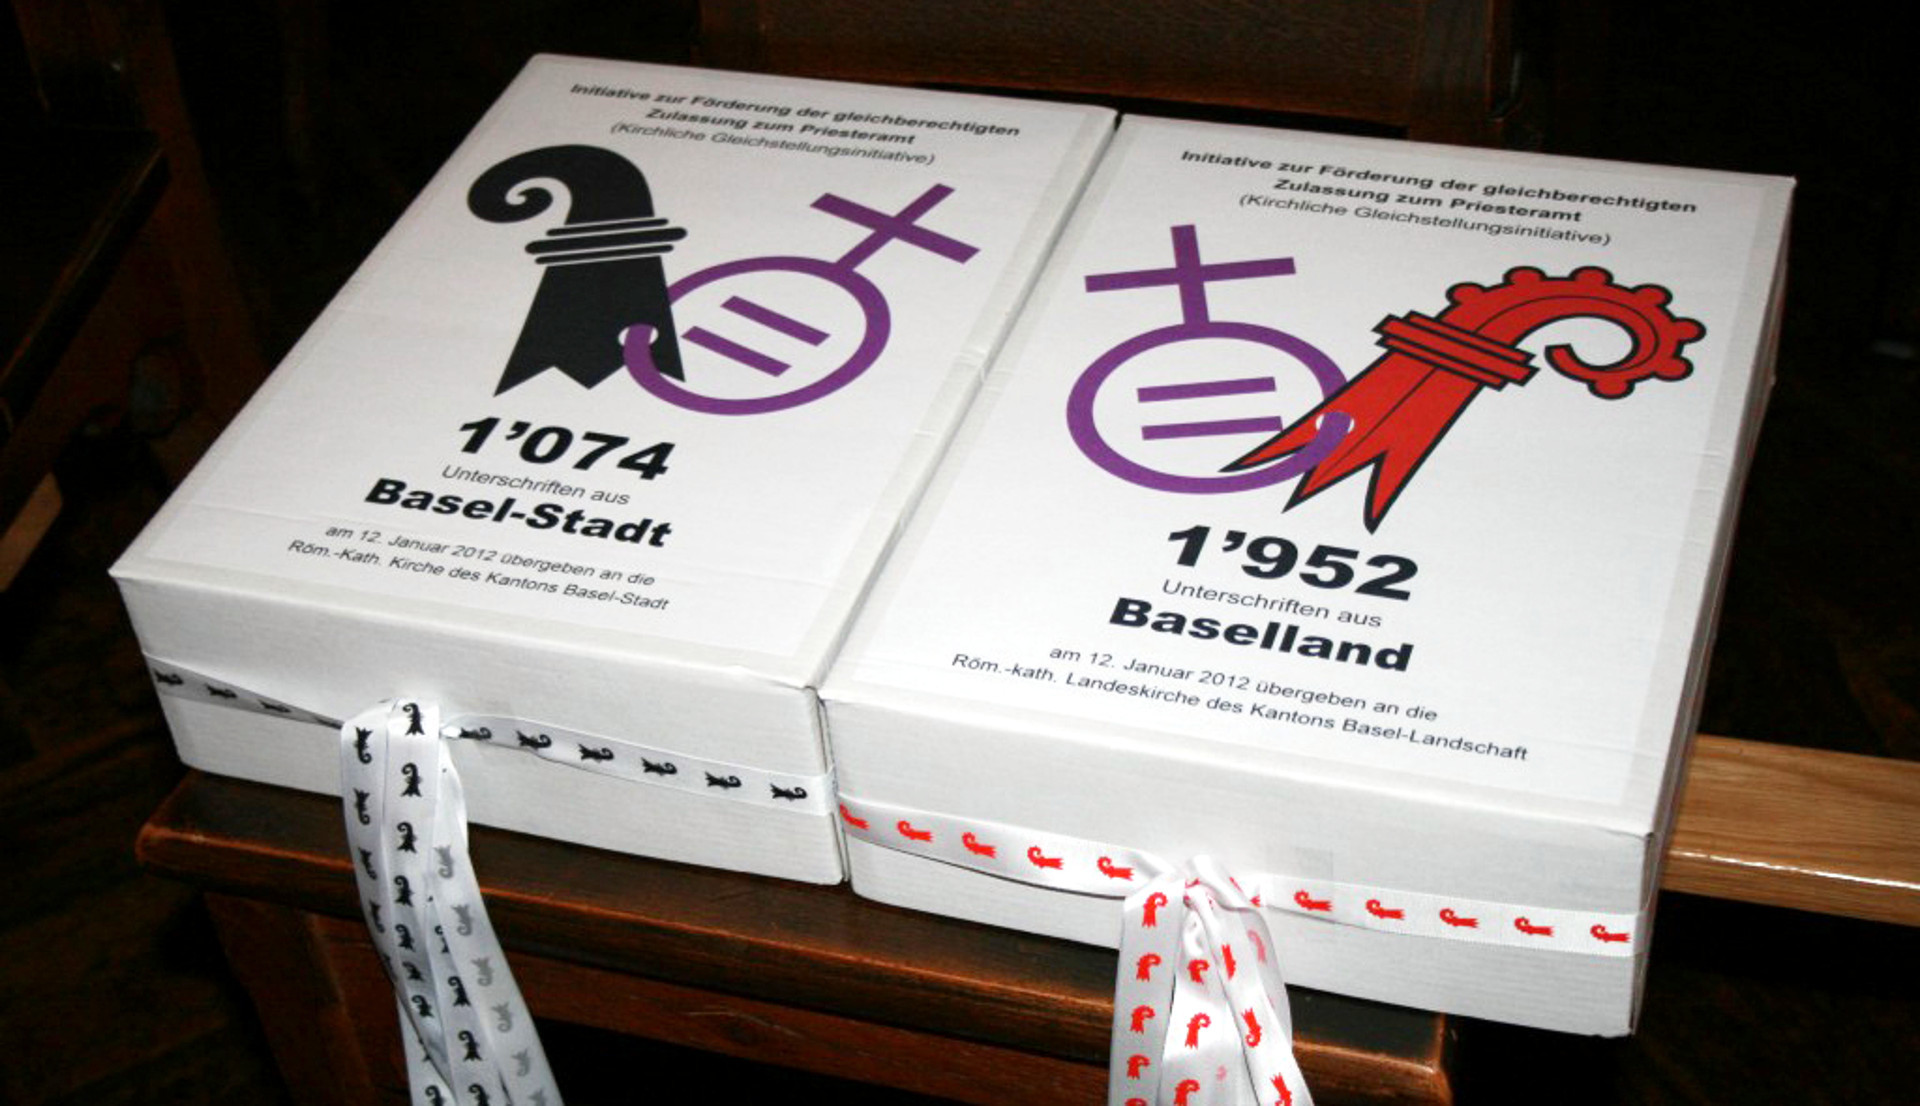 Die "Kirchliche Gleichstellungsinitiative" in den Basler Kantonalkirchen von 2012 führte zu einem Verfassungsartikel.